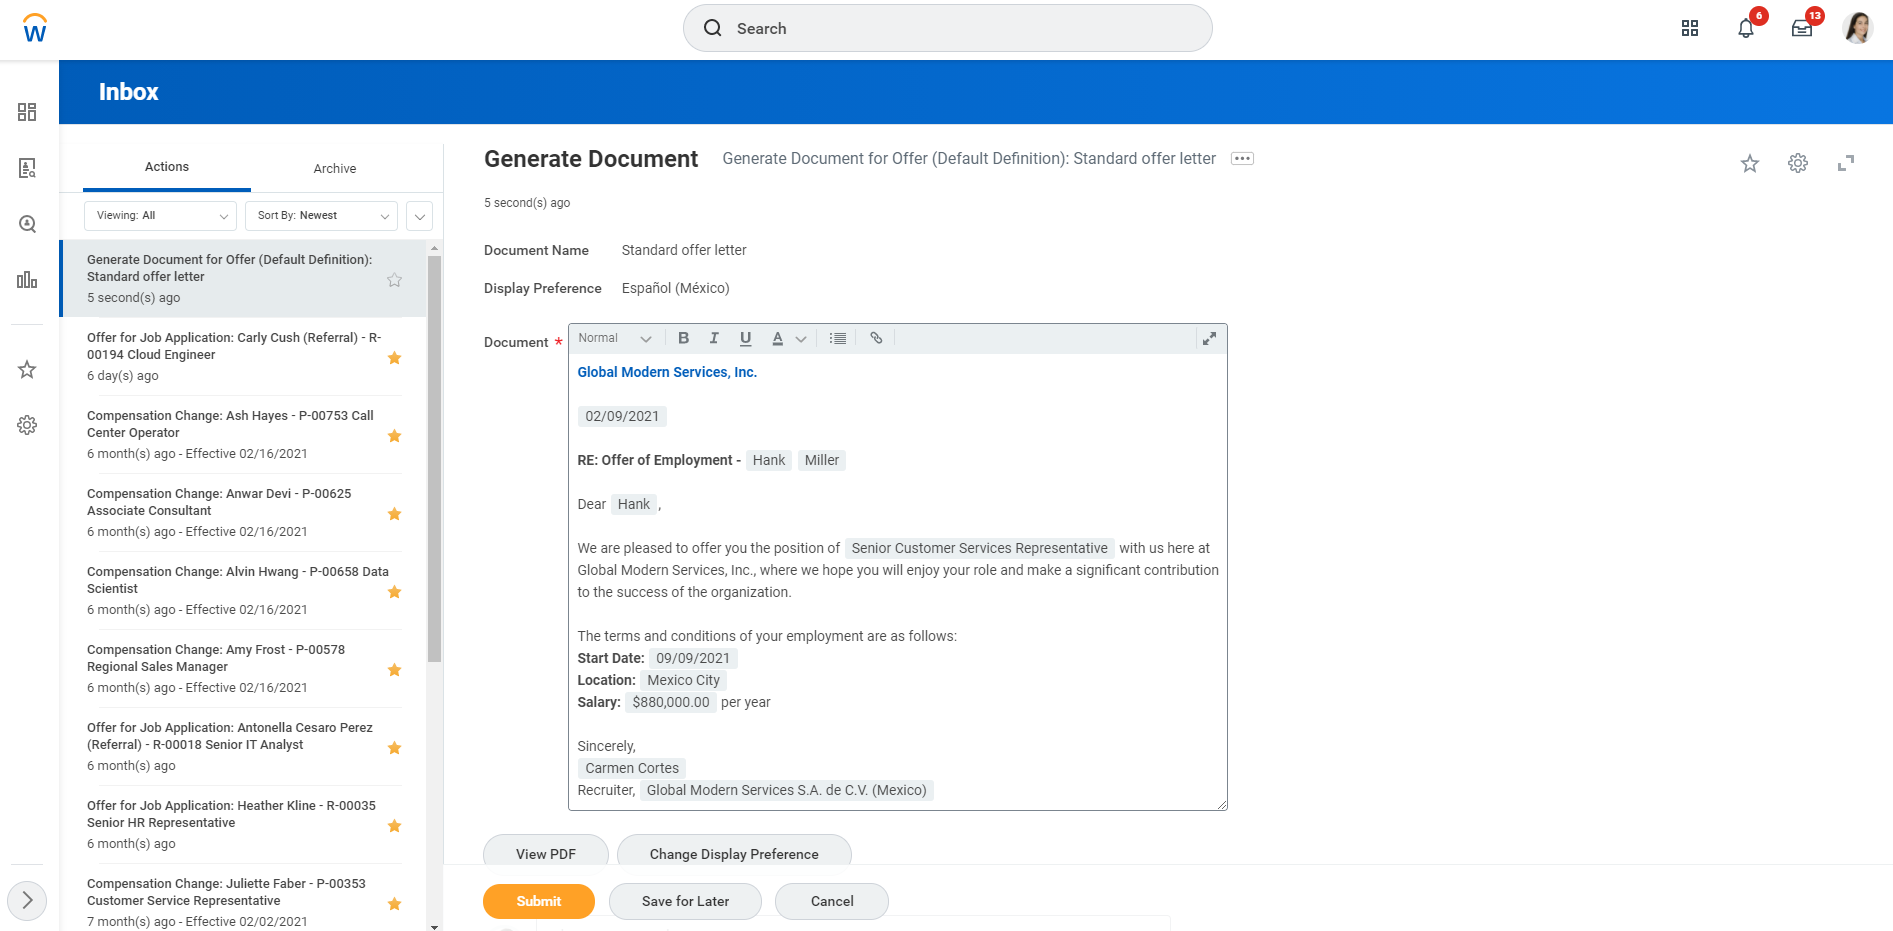 generate document screen